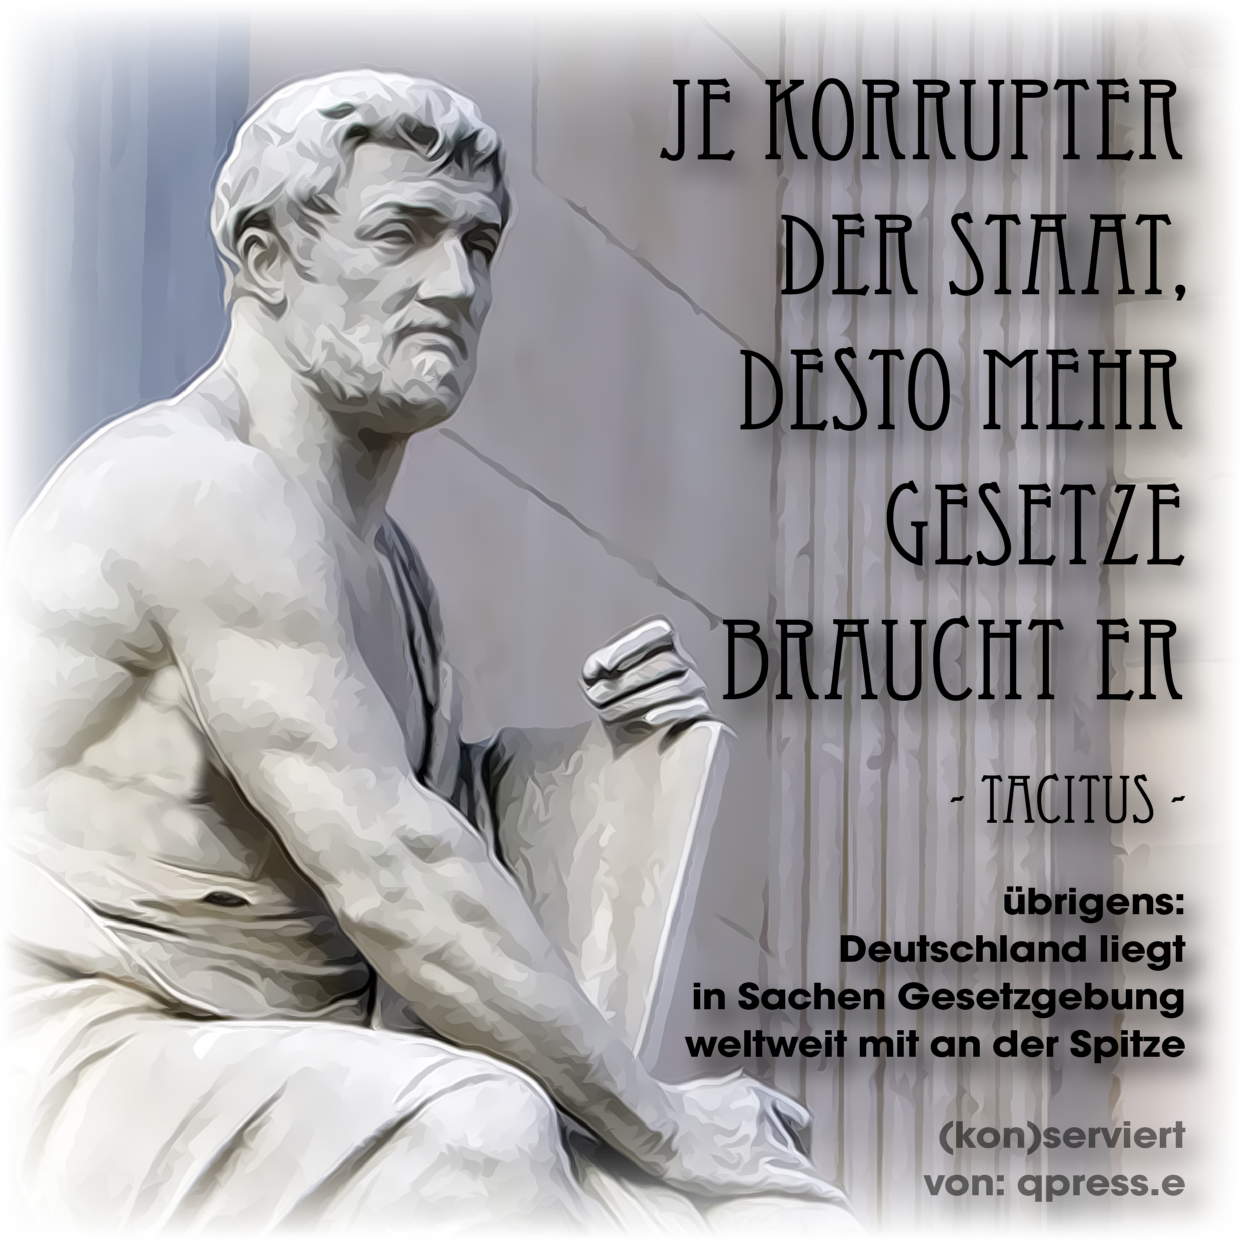 Tacitus je korrupter der Staat, desto mehr gesetze braucht er Gesetzgebung in Deutschland Recht